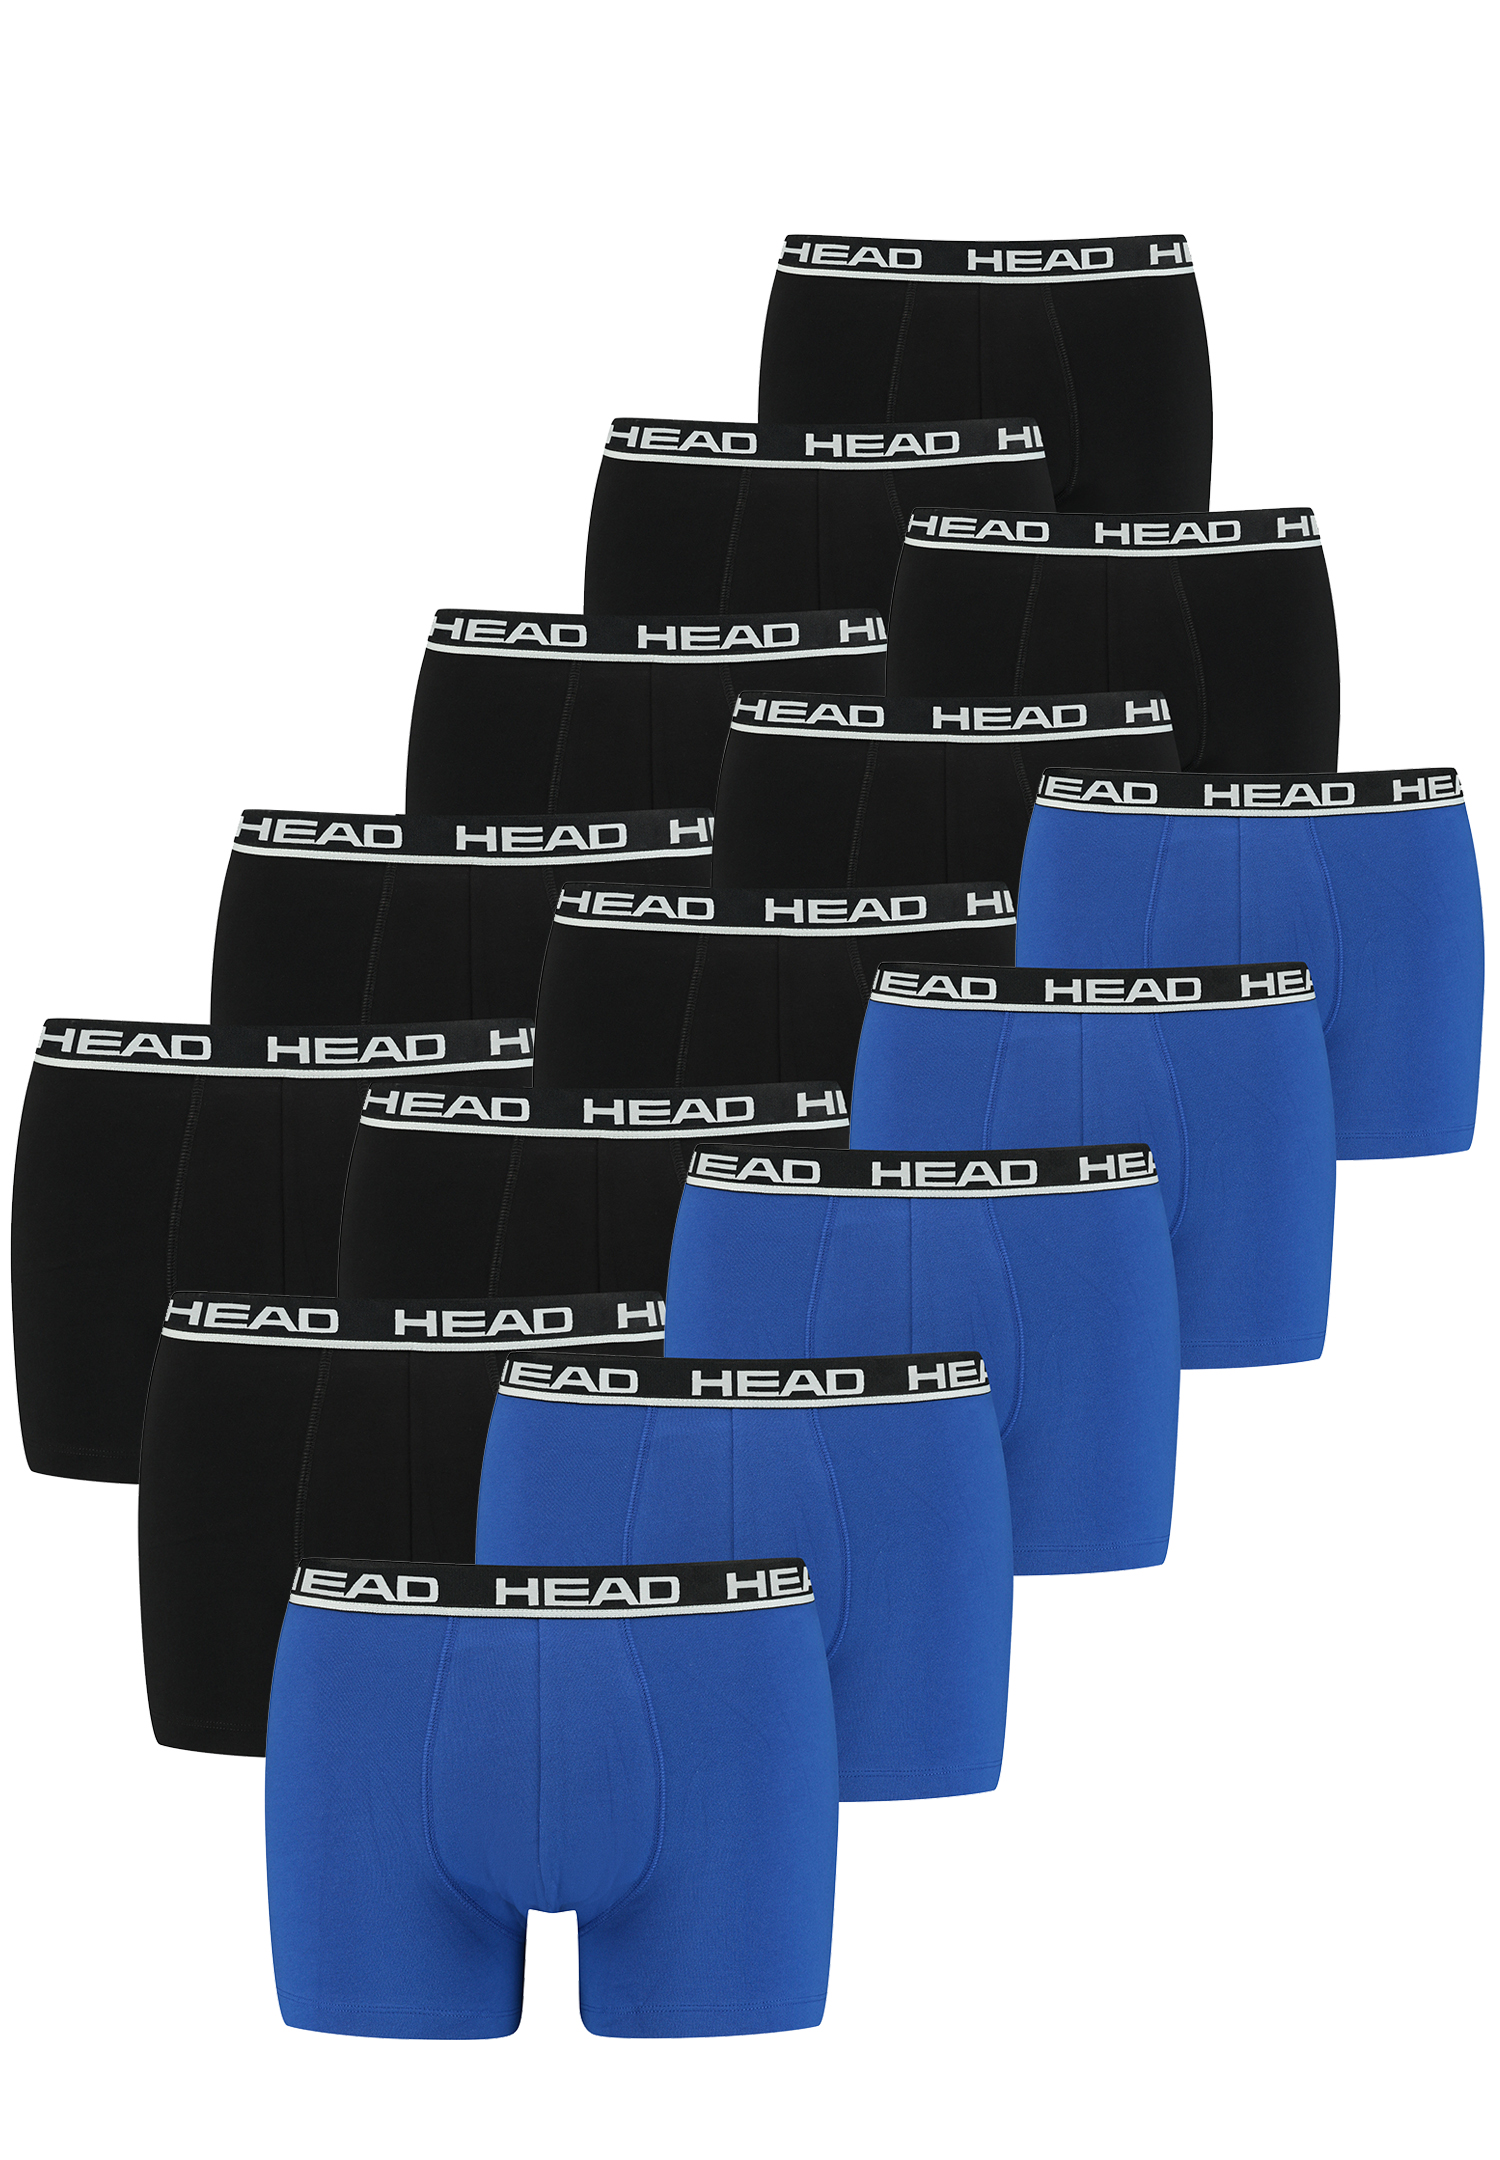 Боксеры HEAD Boxershorts 15 шт, цвет 021 - blue / black